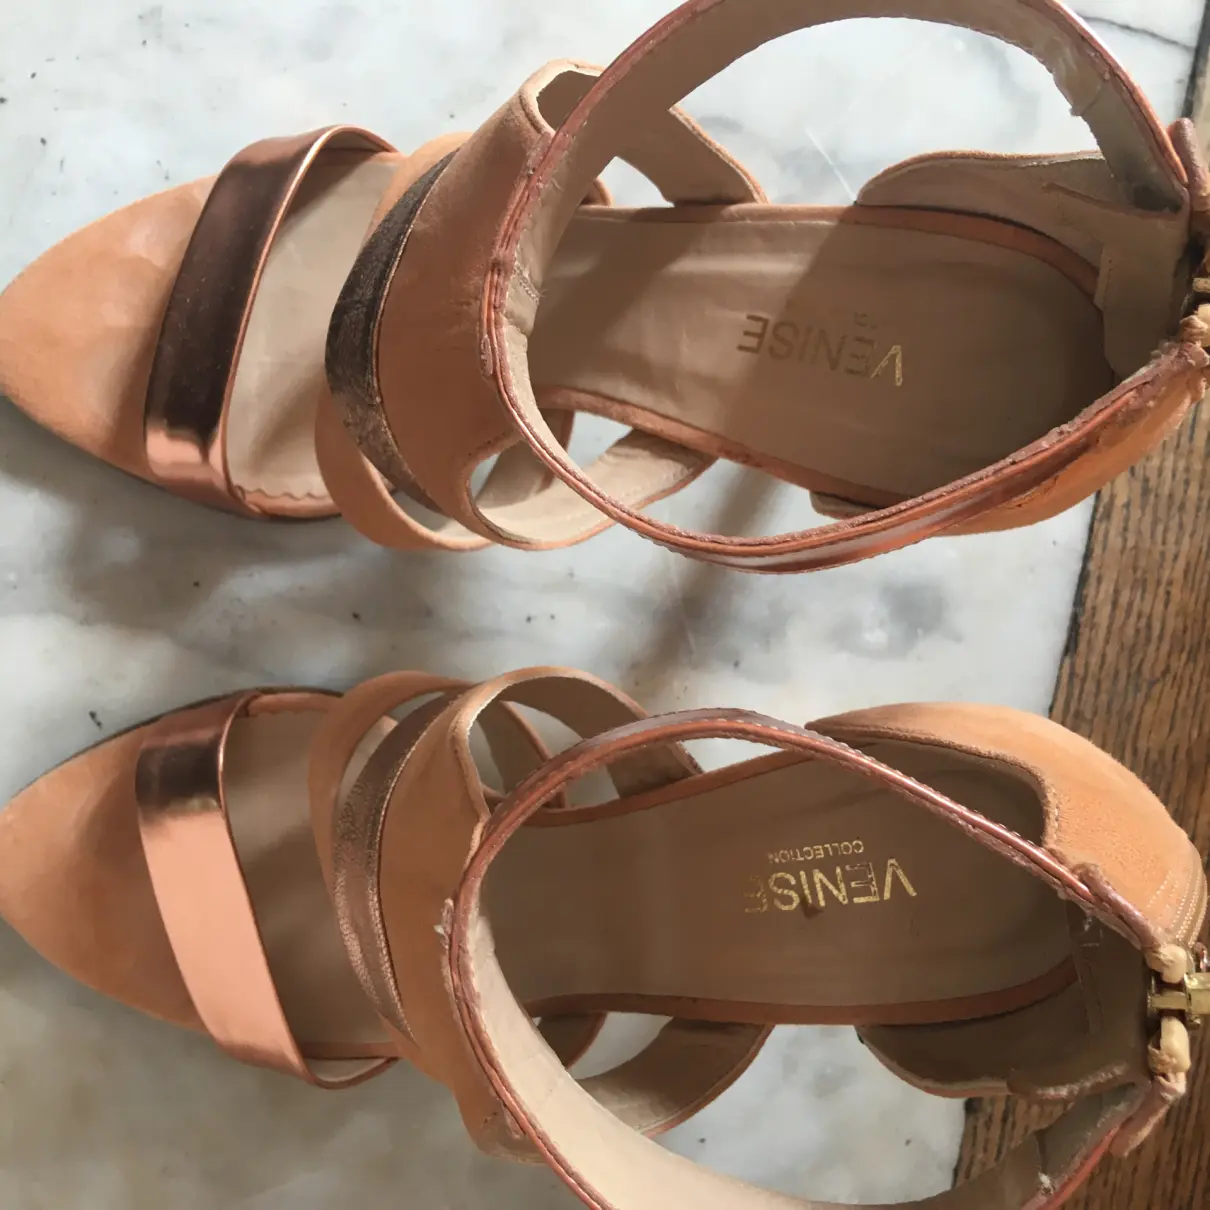 Sandal Venise Collection